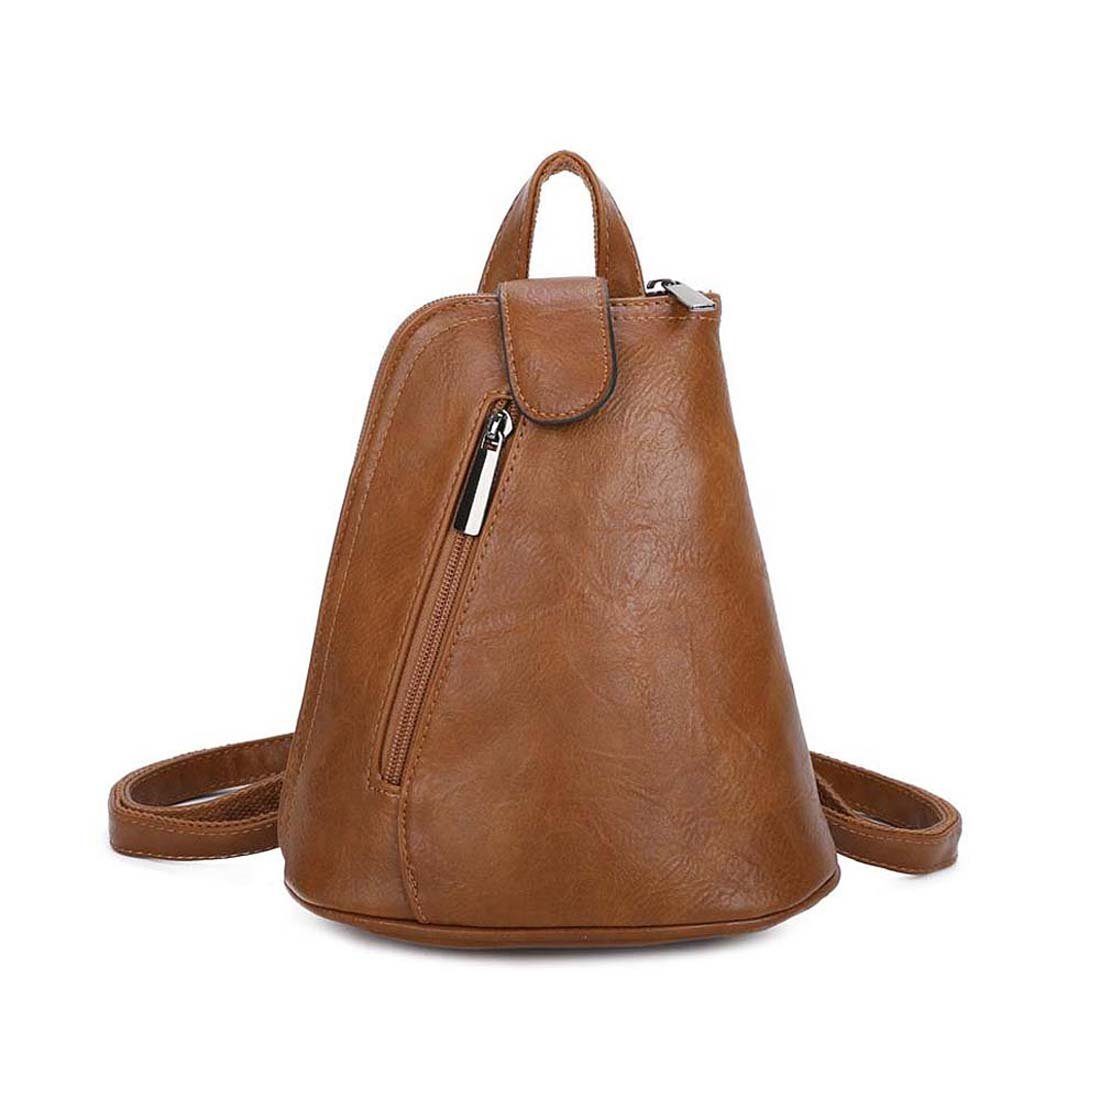 ITALYSHOP24 Rucksack Damen Tasche Crossover, tragbar / Handtasche Rucksack, kleiner Schultertasche Cognac Umhängetasche